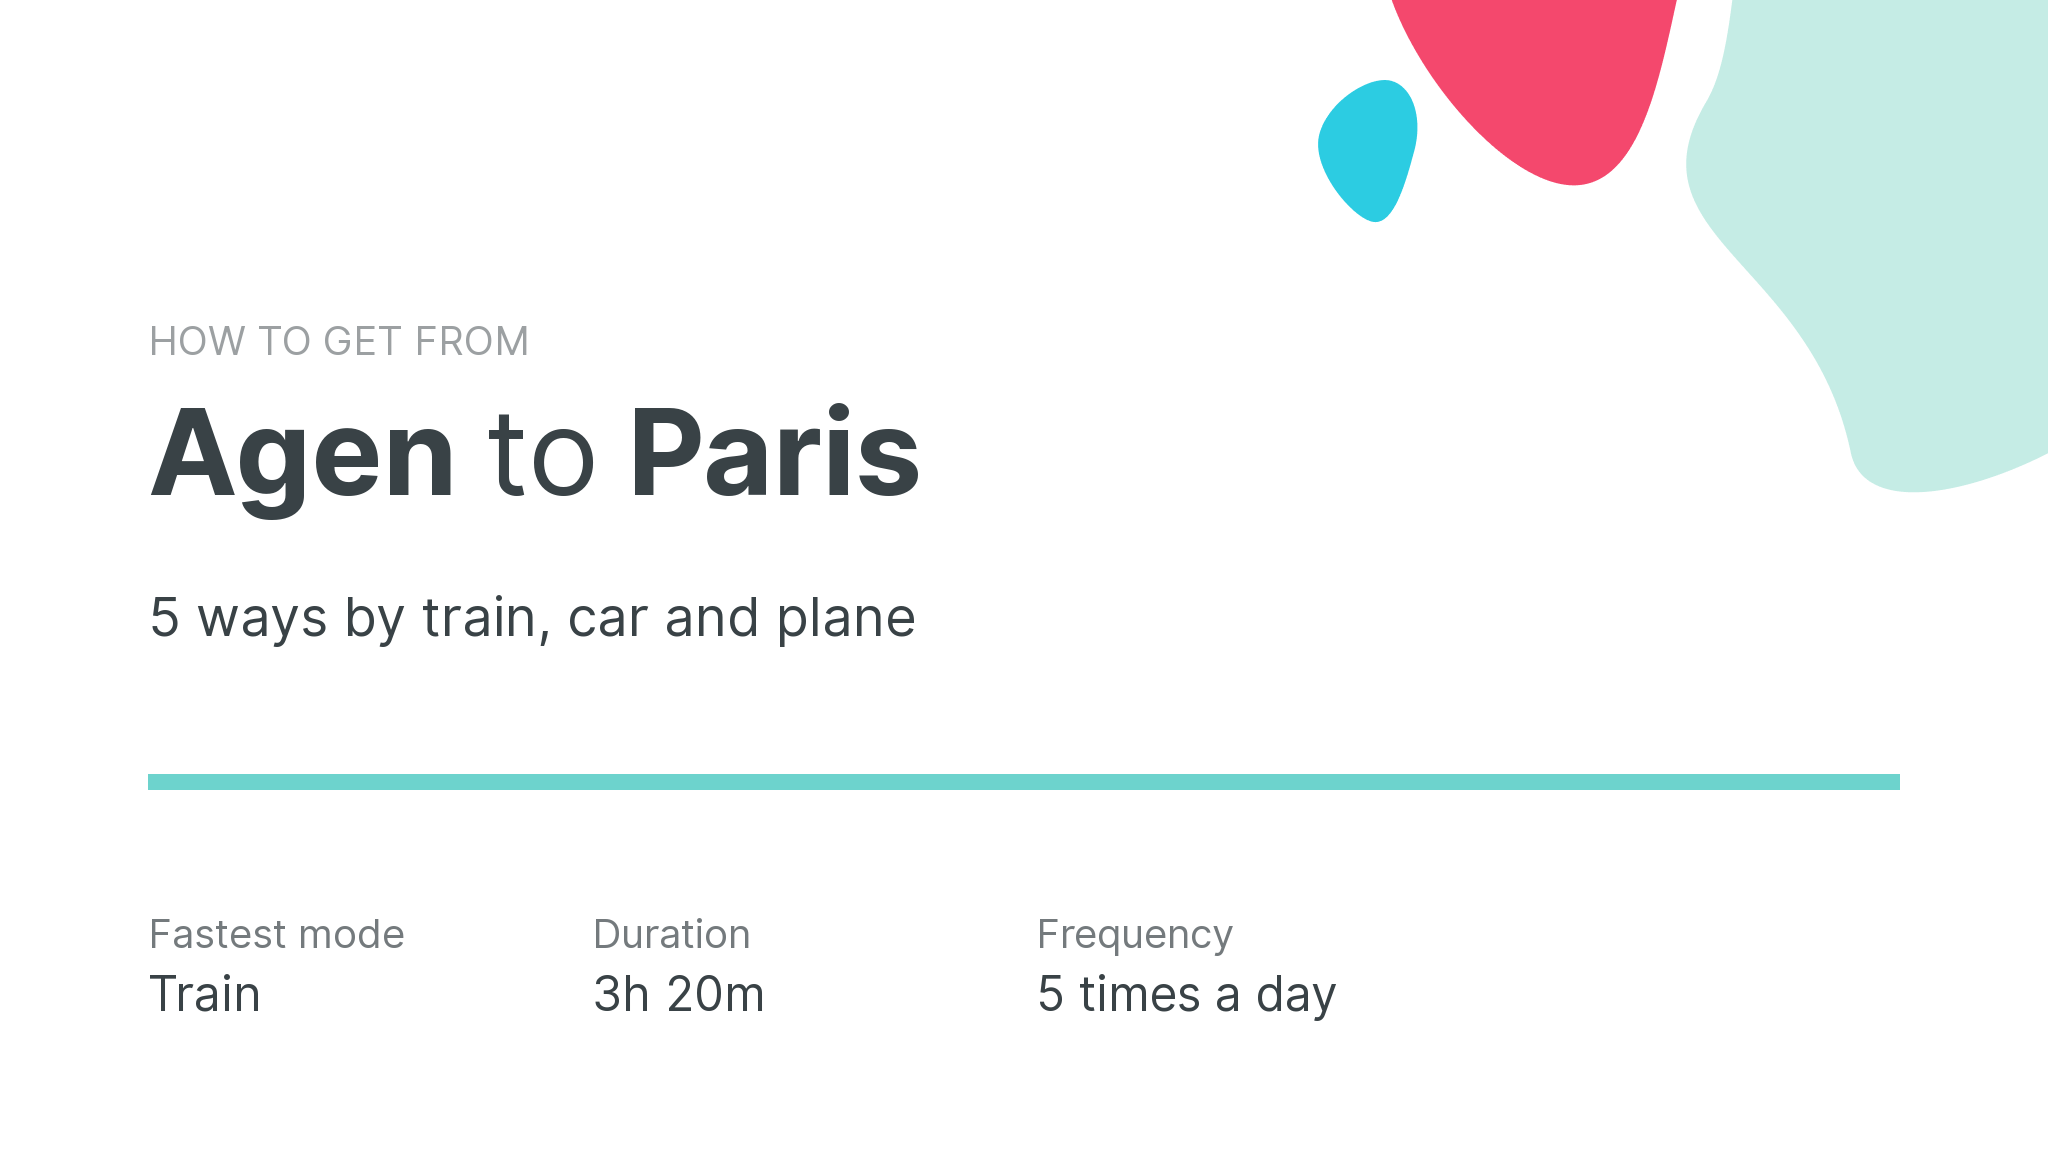 How do I get from Agen to Paris